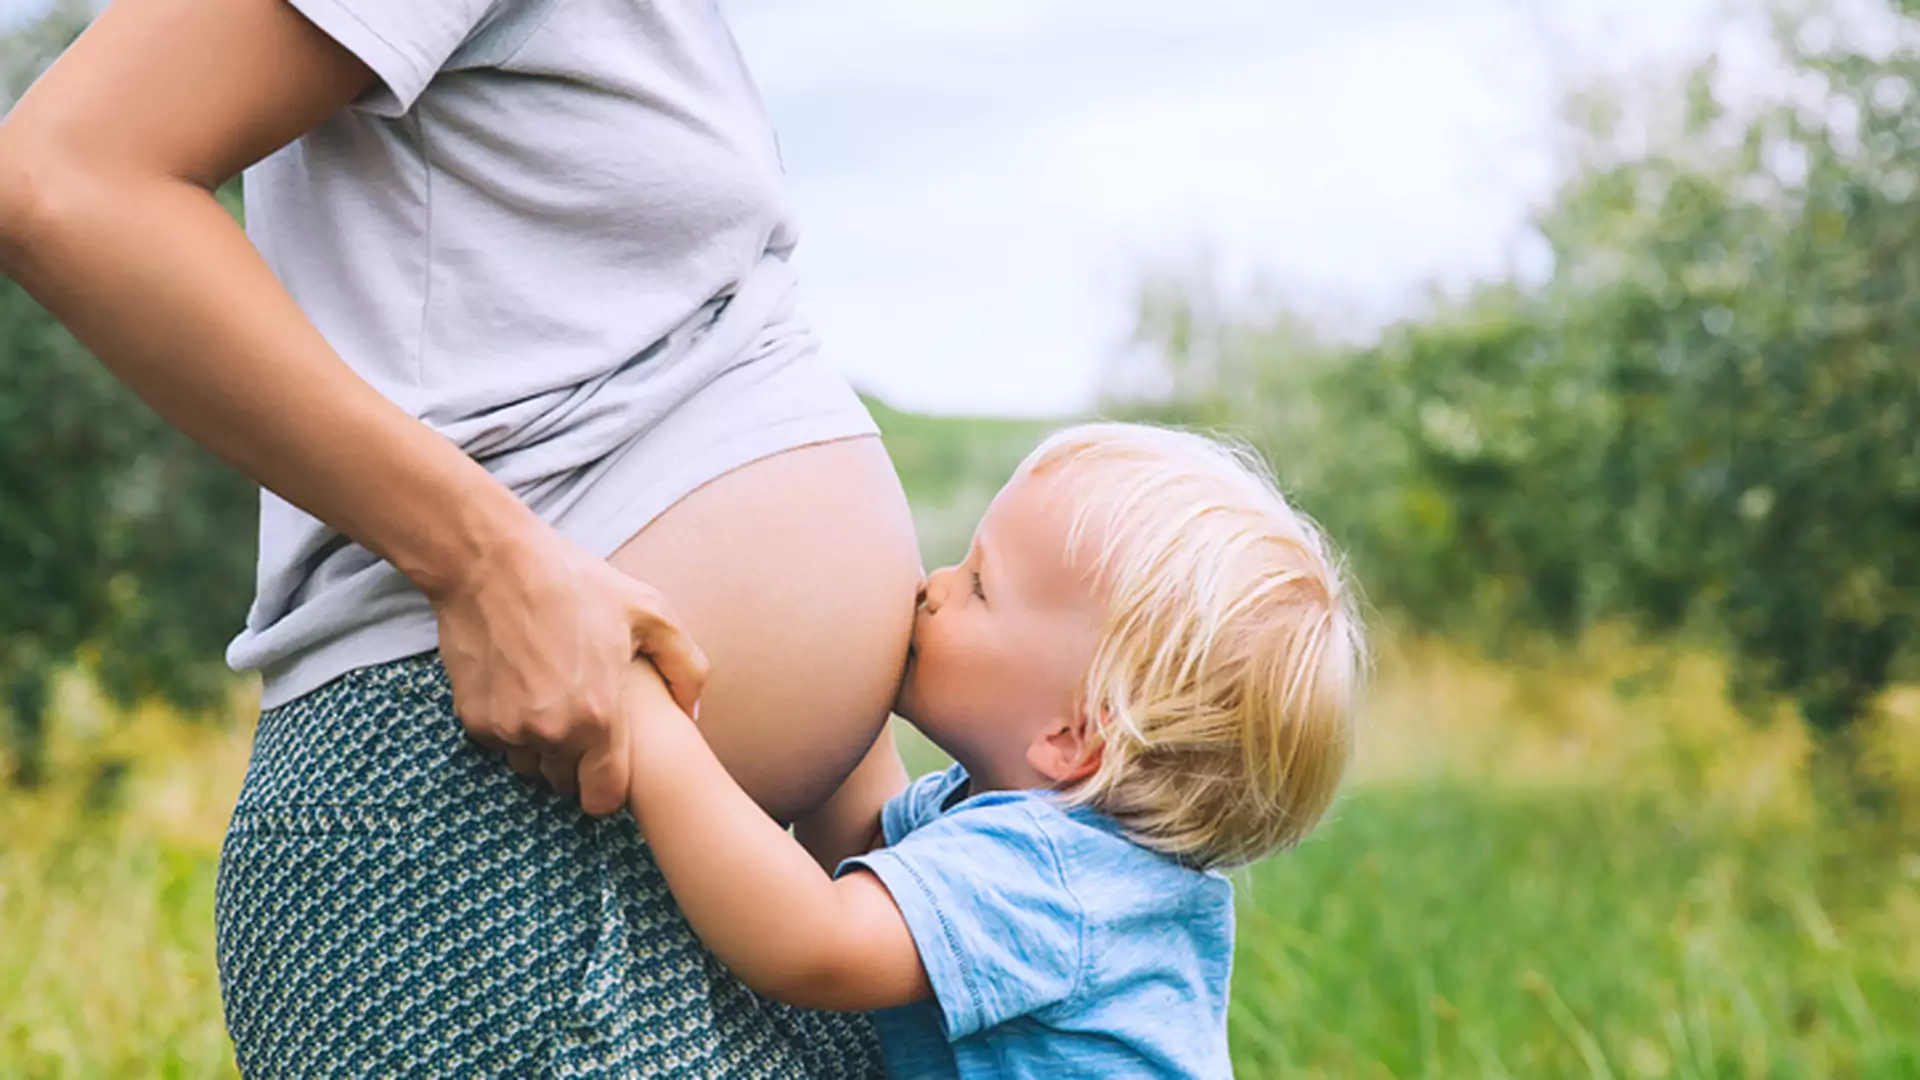 W tym wieku decydujemy się na pierwsze dziecko - kobiety zmieniają podejście do macierzyństwa